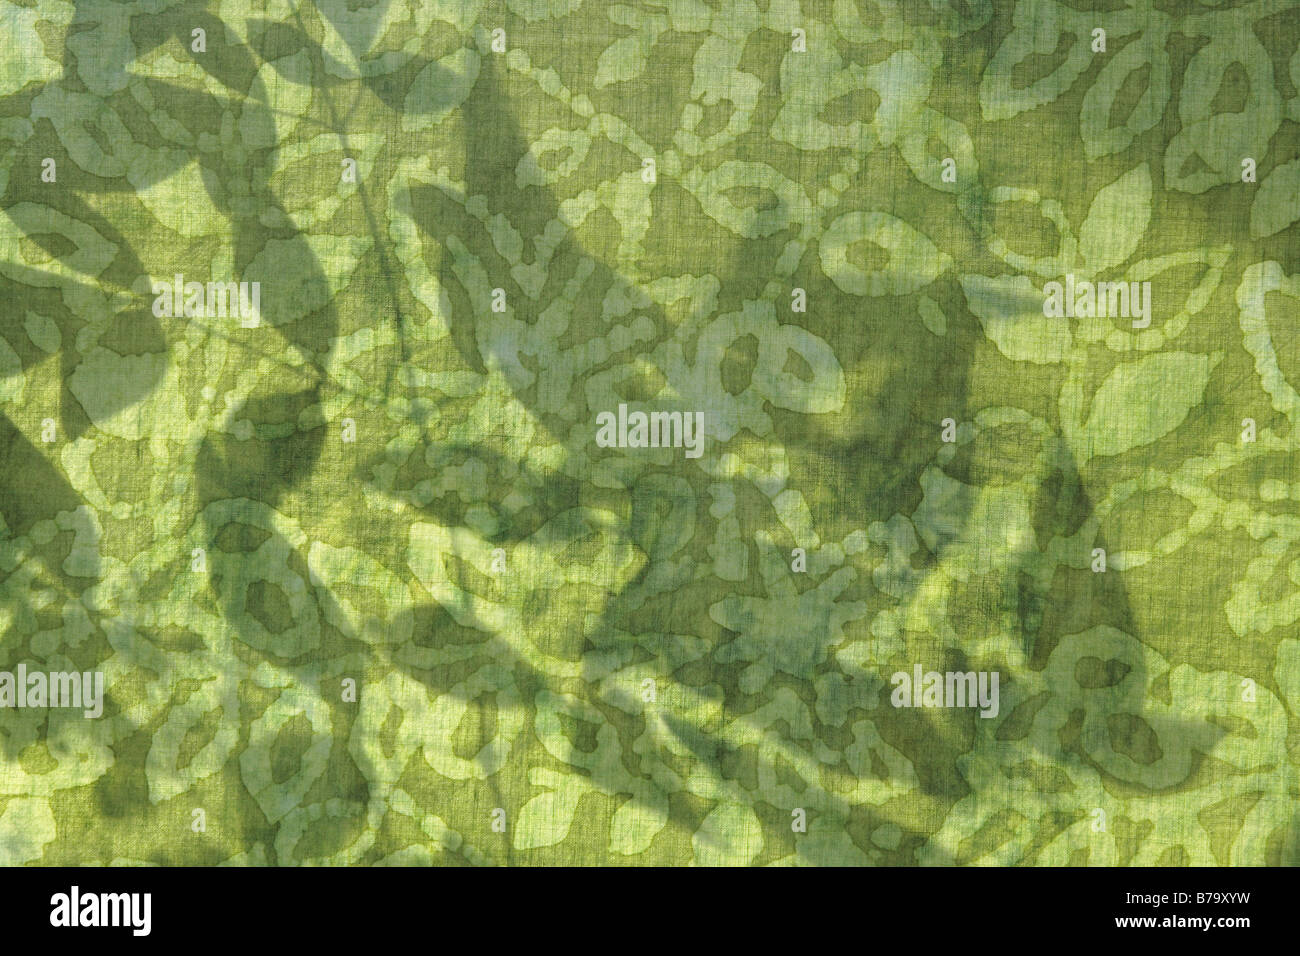 Le ombre delle foglie sul tessuto verde stampata con un disegno a foglia Foto Stock